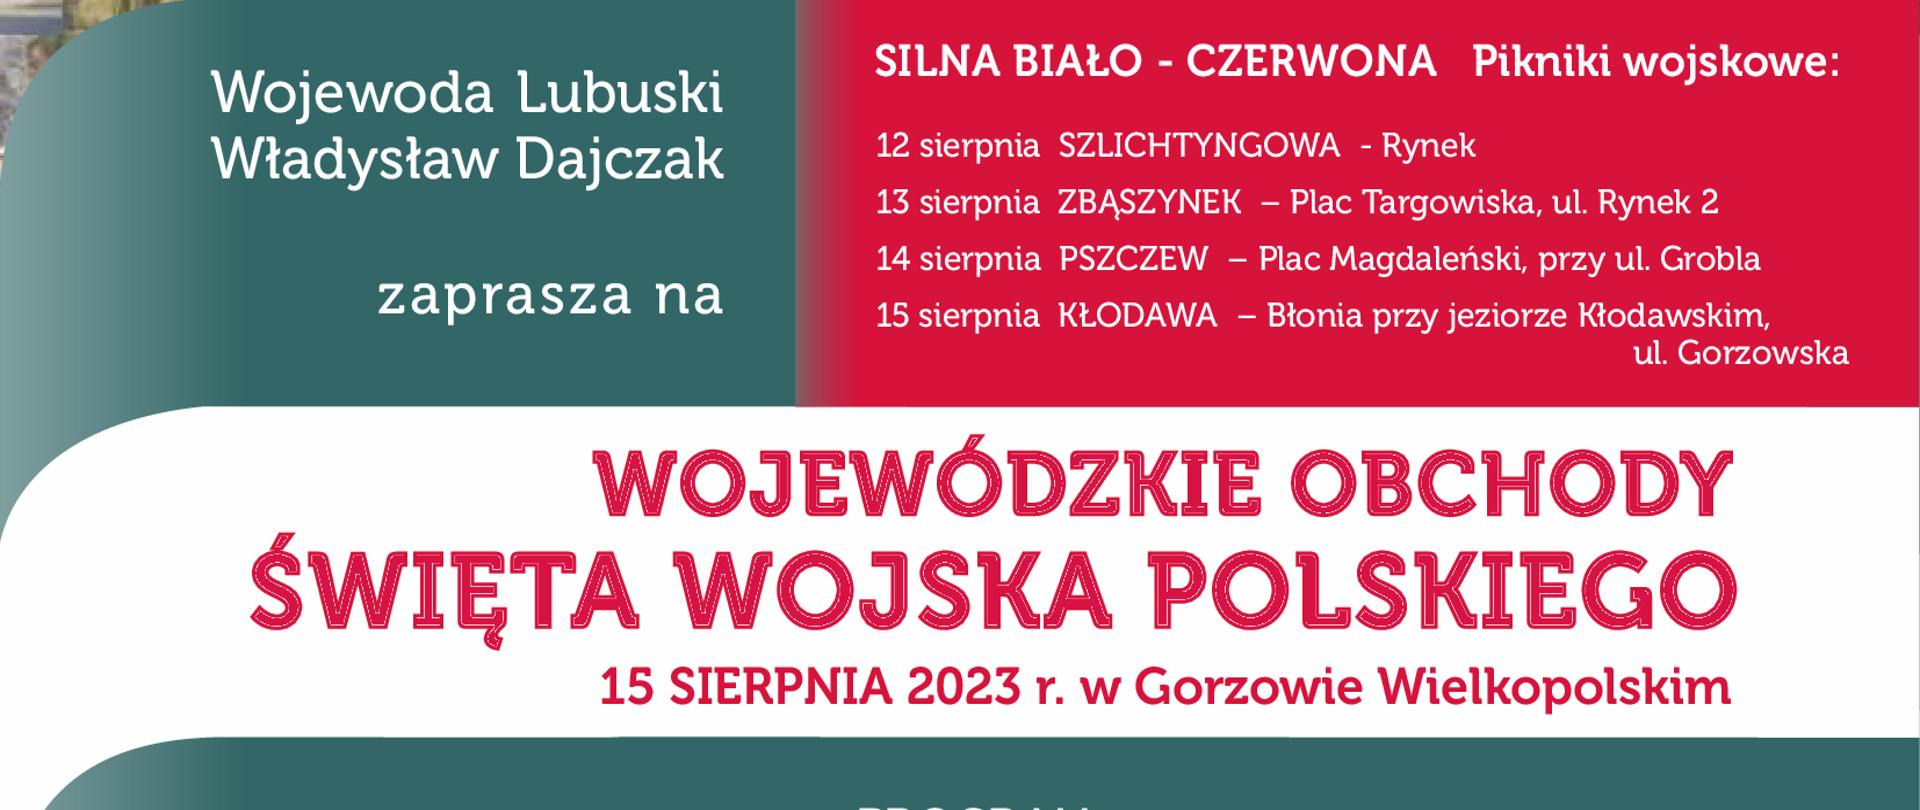 Zaproszenie na obchody Święta Wojska Polskiego